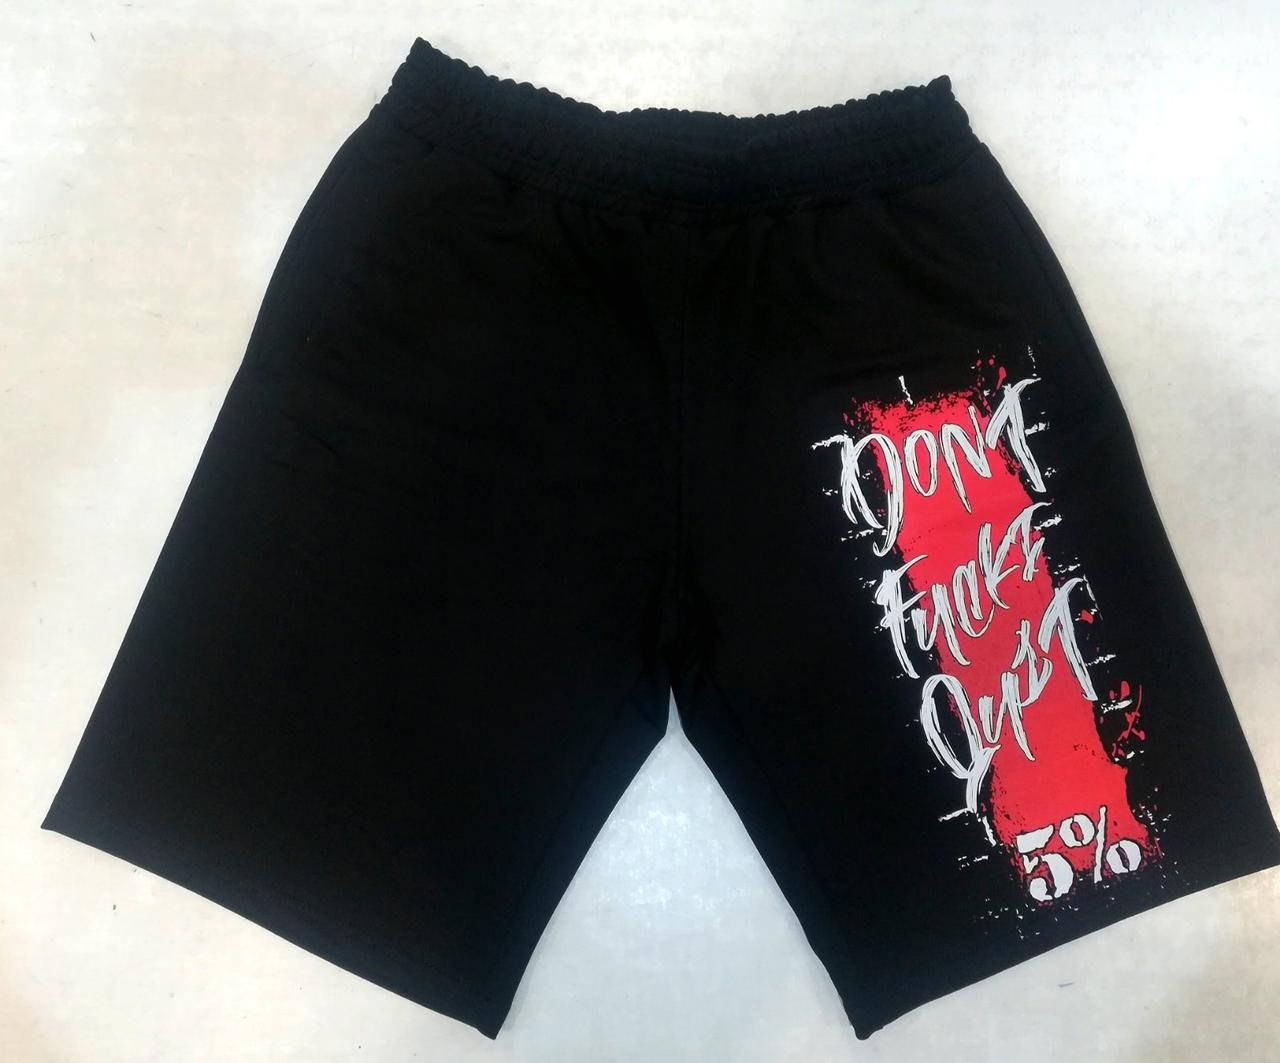 

Спортивные шорты Dont fuchi quit 5% (разные цвета) XL, Черный